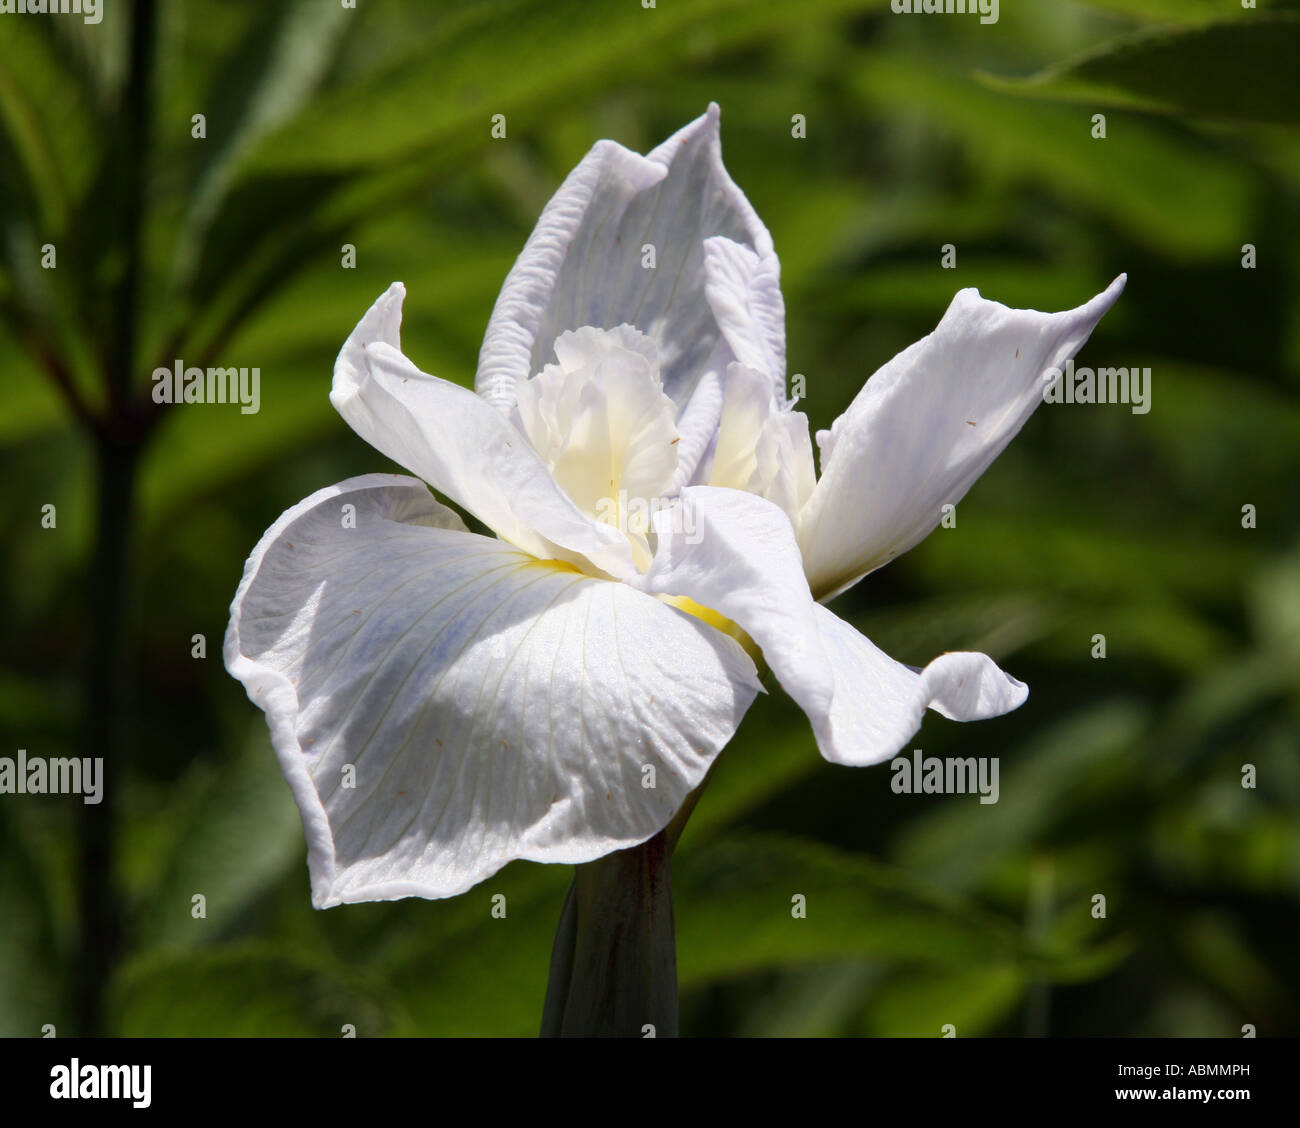 A white iris. Stock Photo